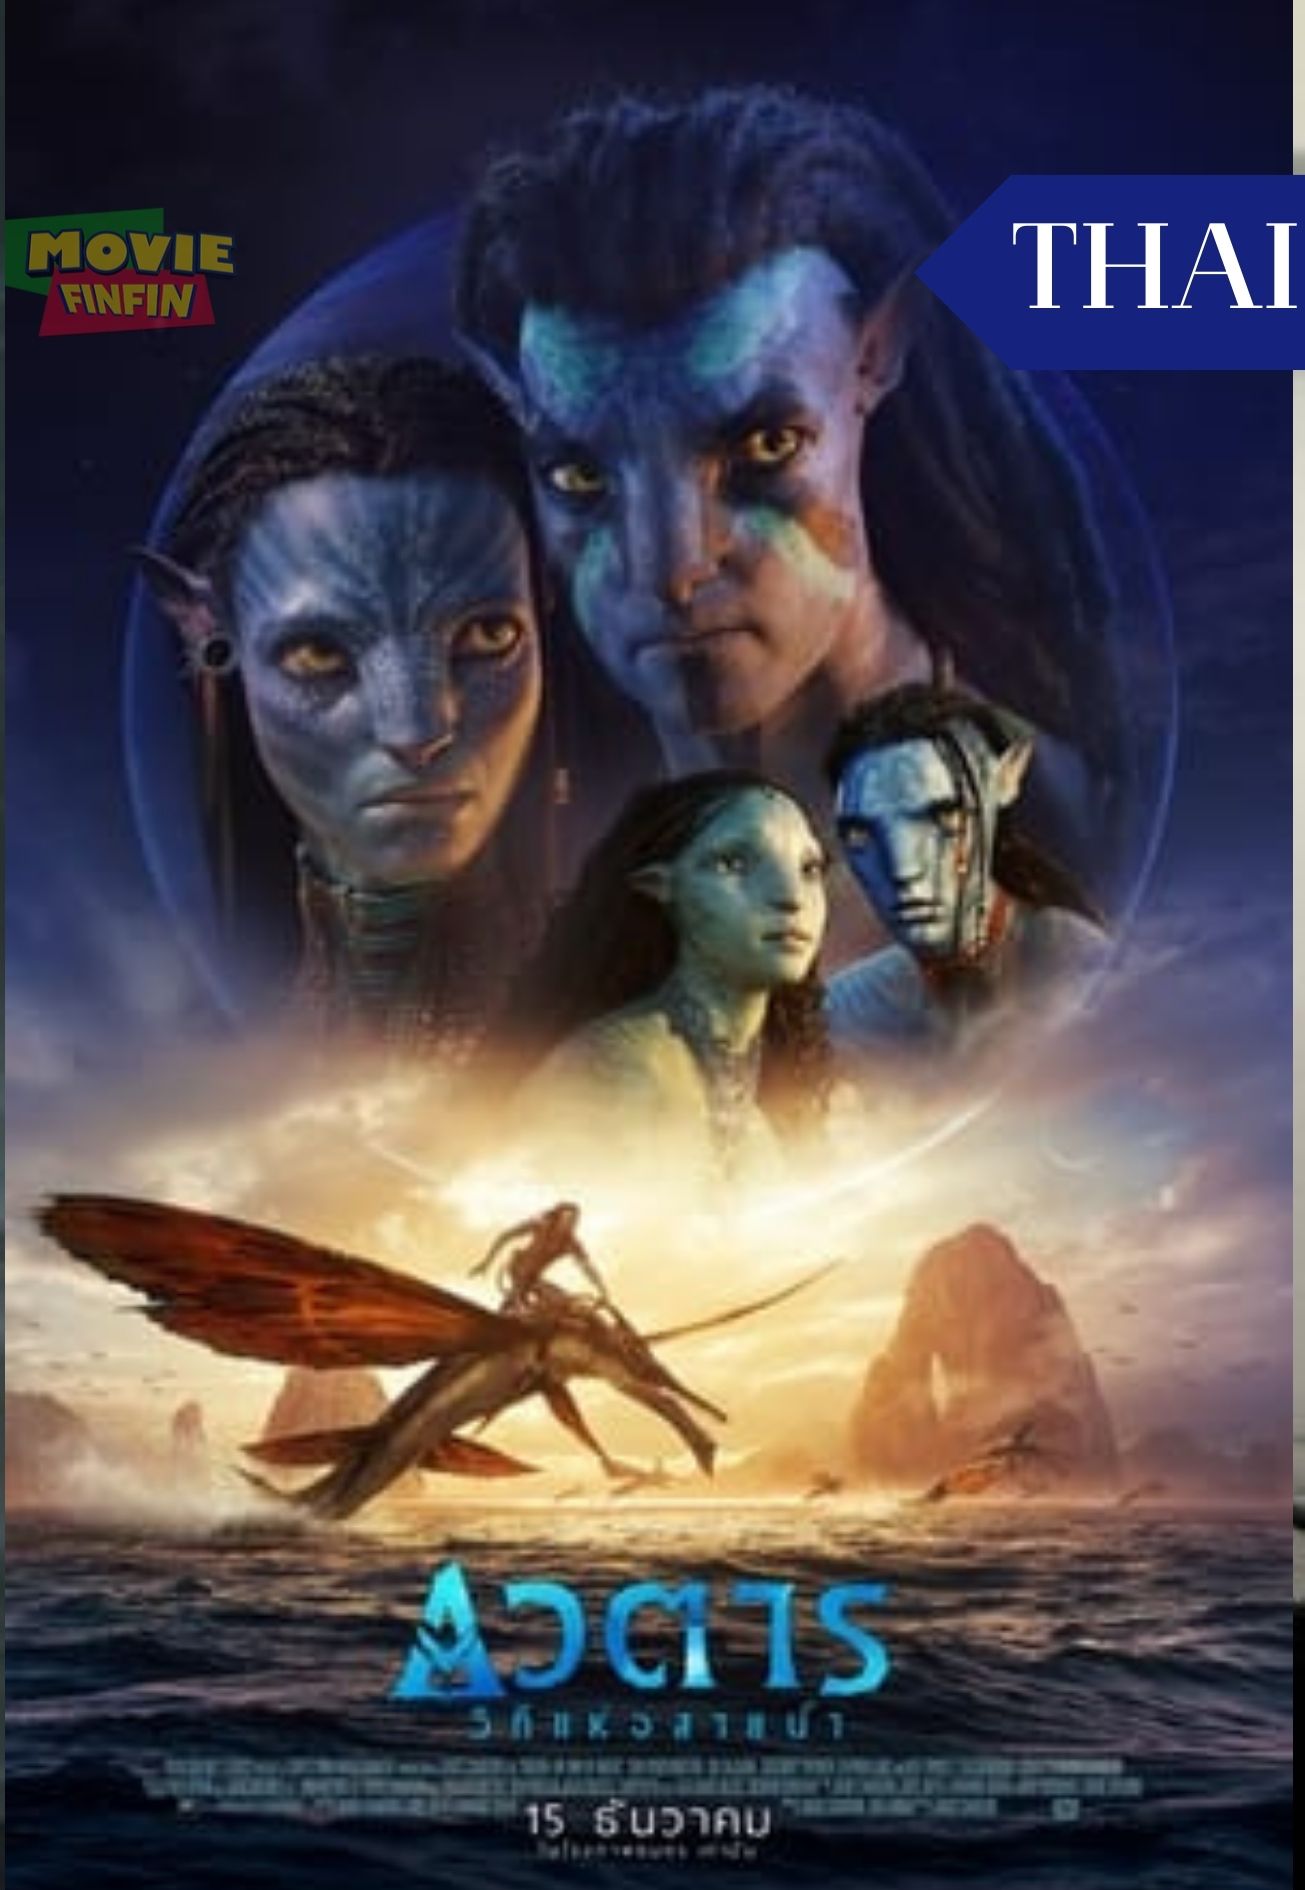 Avatar The Way of Water (2022) อวตาร วิถีแห่งสายน้ำ 